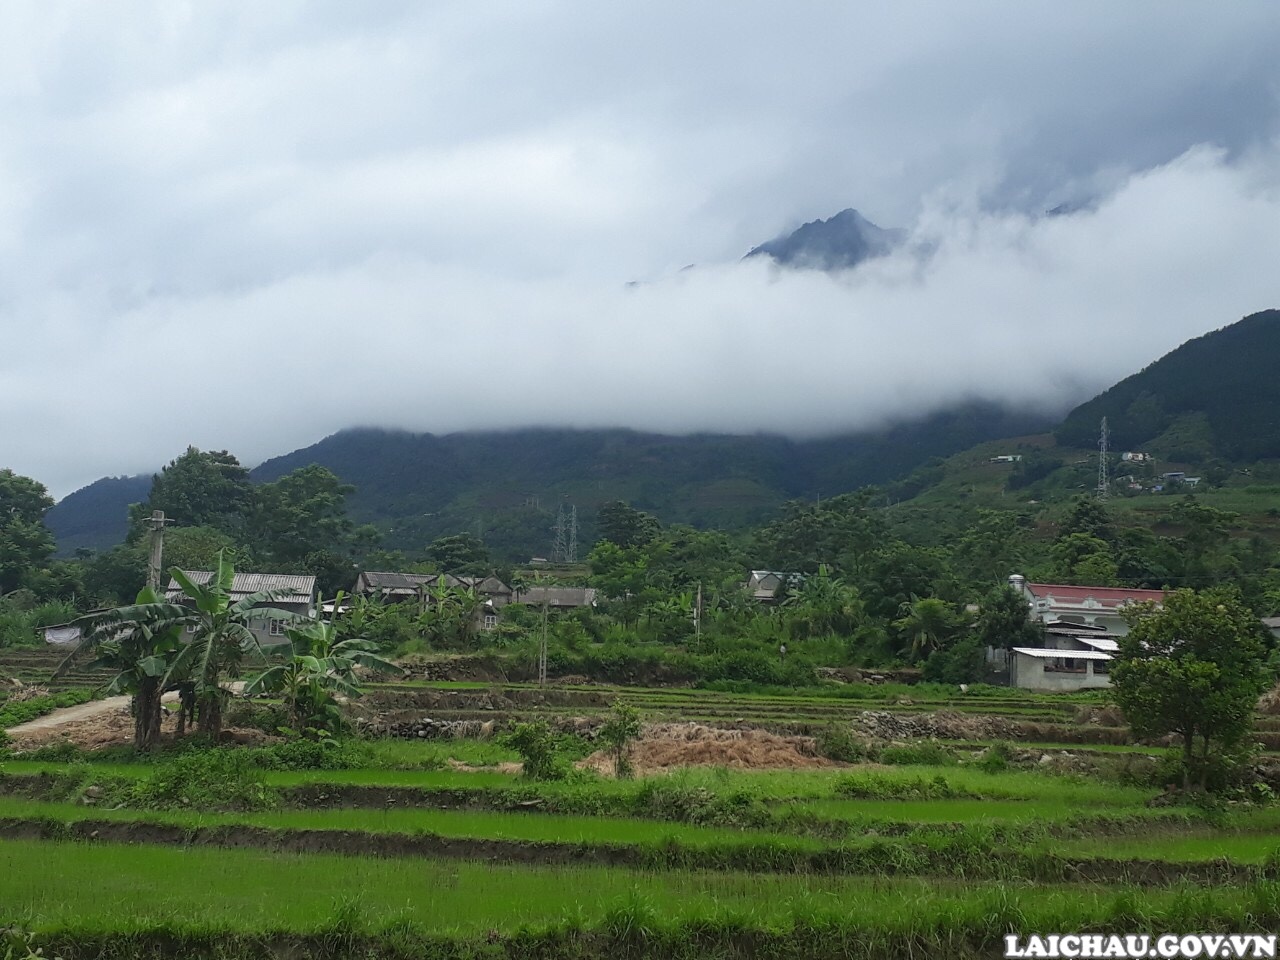 Tin cảnh báo lũ quét, sạt lở đất, sụt lún đất do mưa lũ hoặc dòng chảy trên khu vực tỉnh Lai Châu